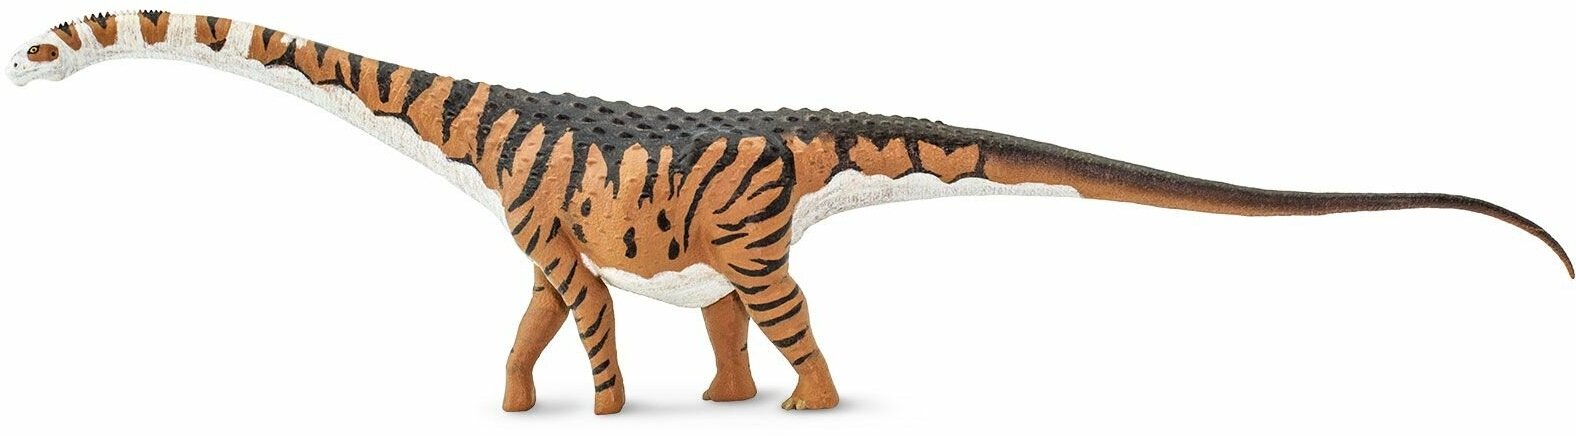 Фигурка животного динозавра Safari Ltd Малавизавр XL, для детей, игрушка коллекционная, 305829